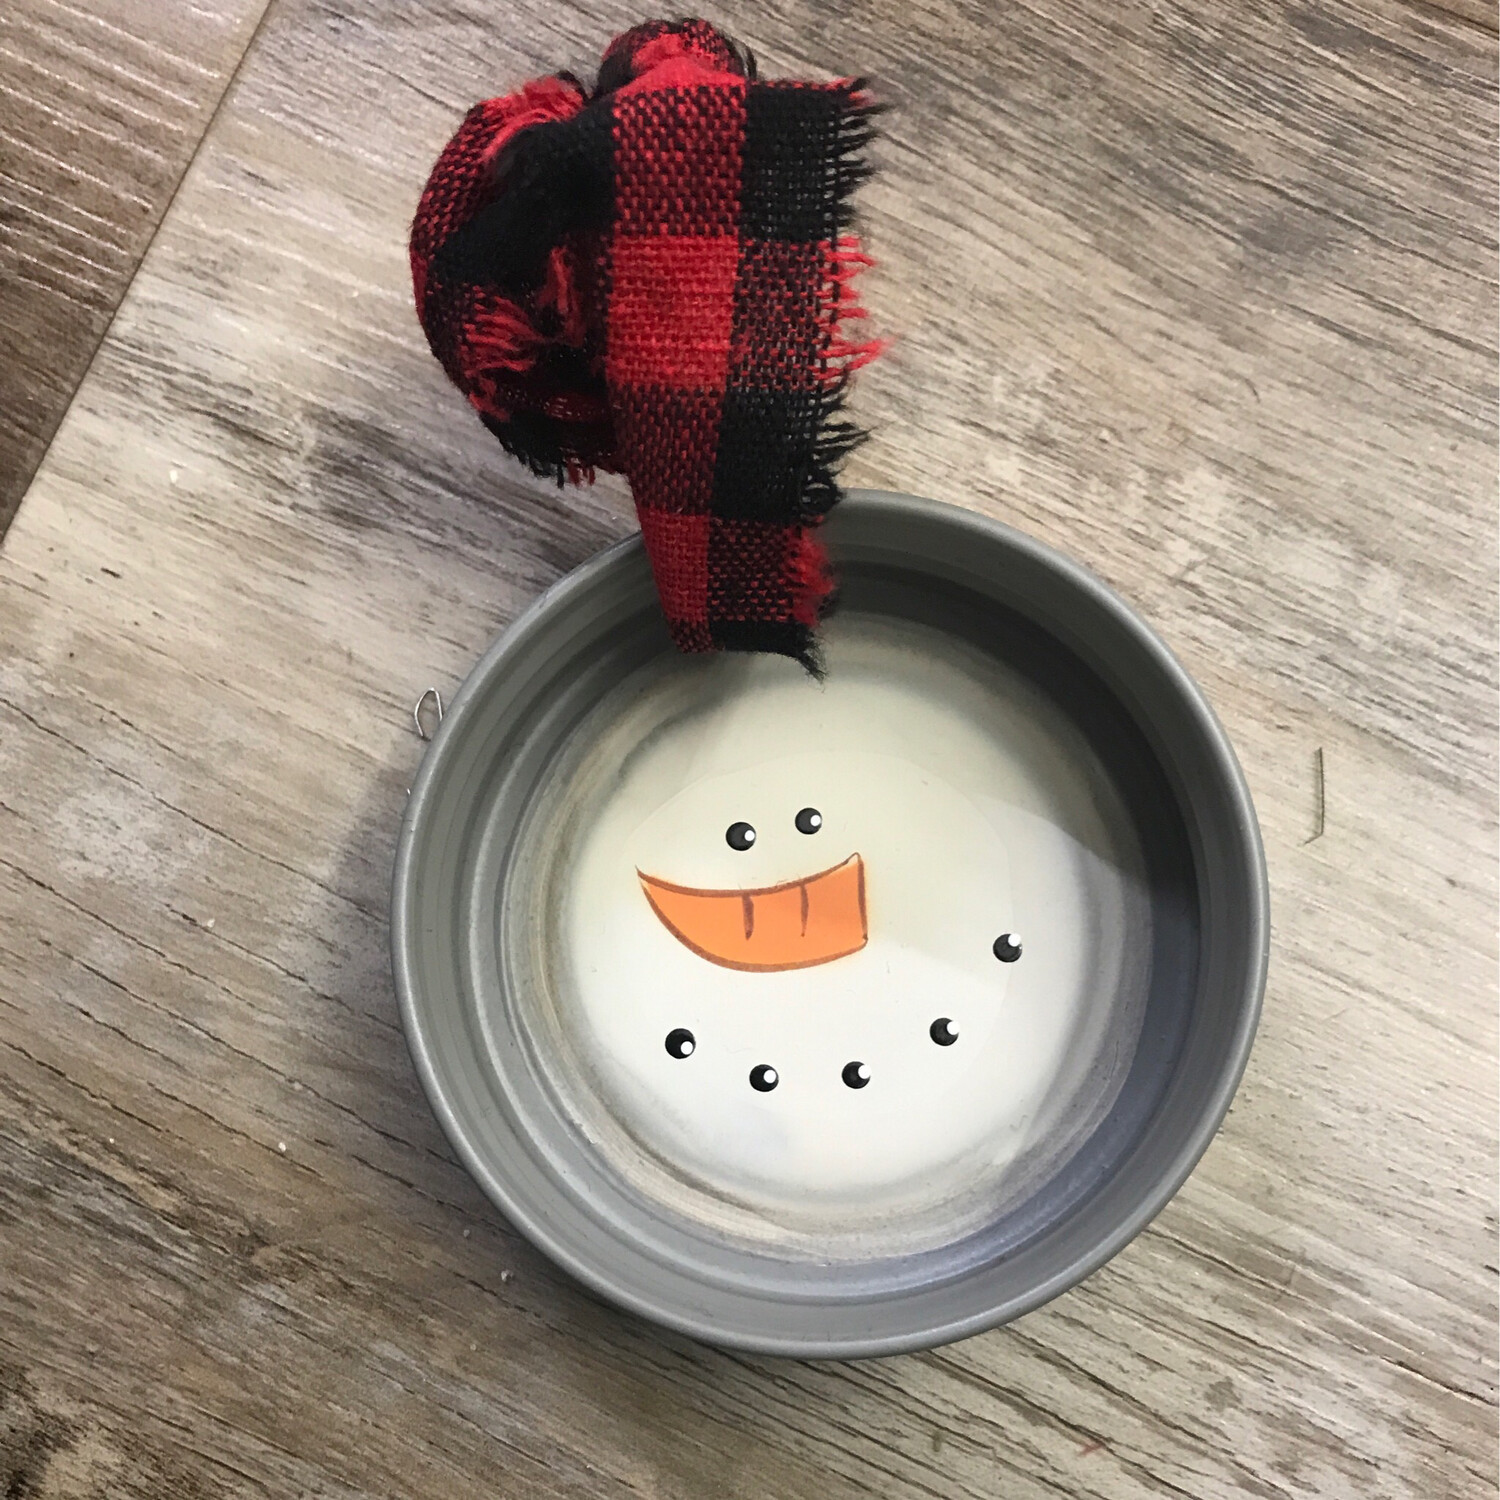 Jar Lid Snowman Ornament